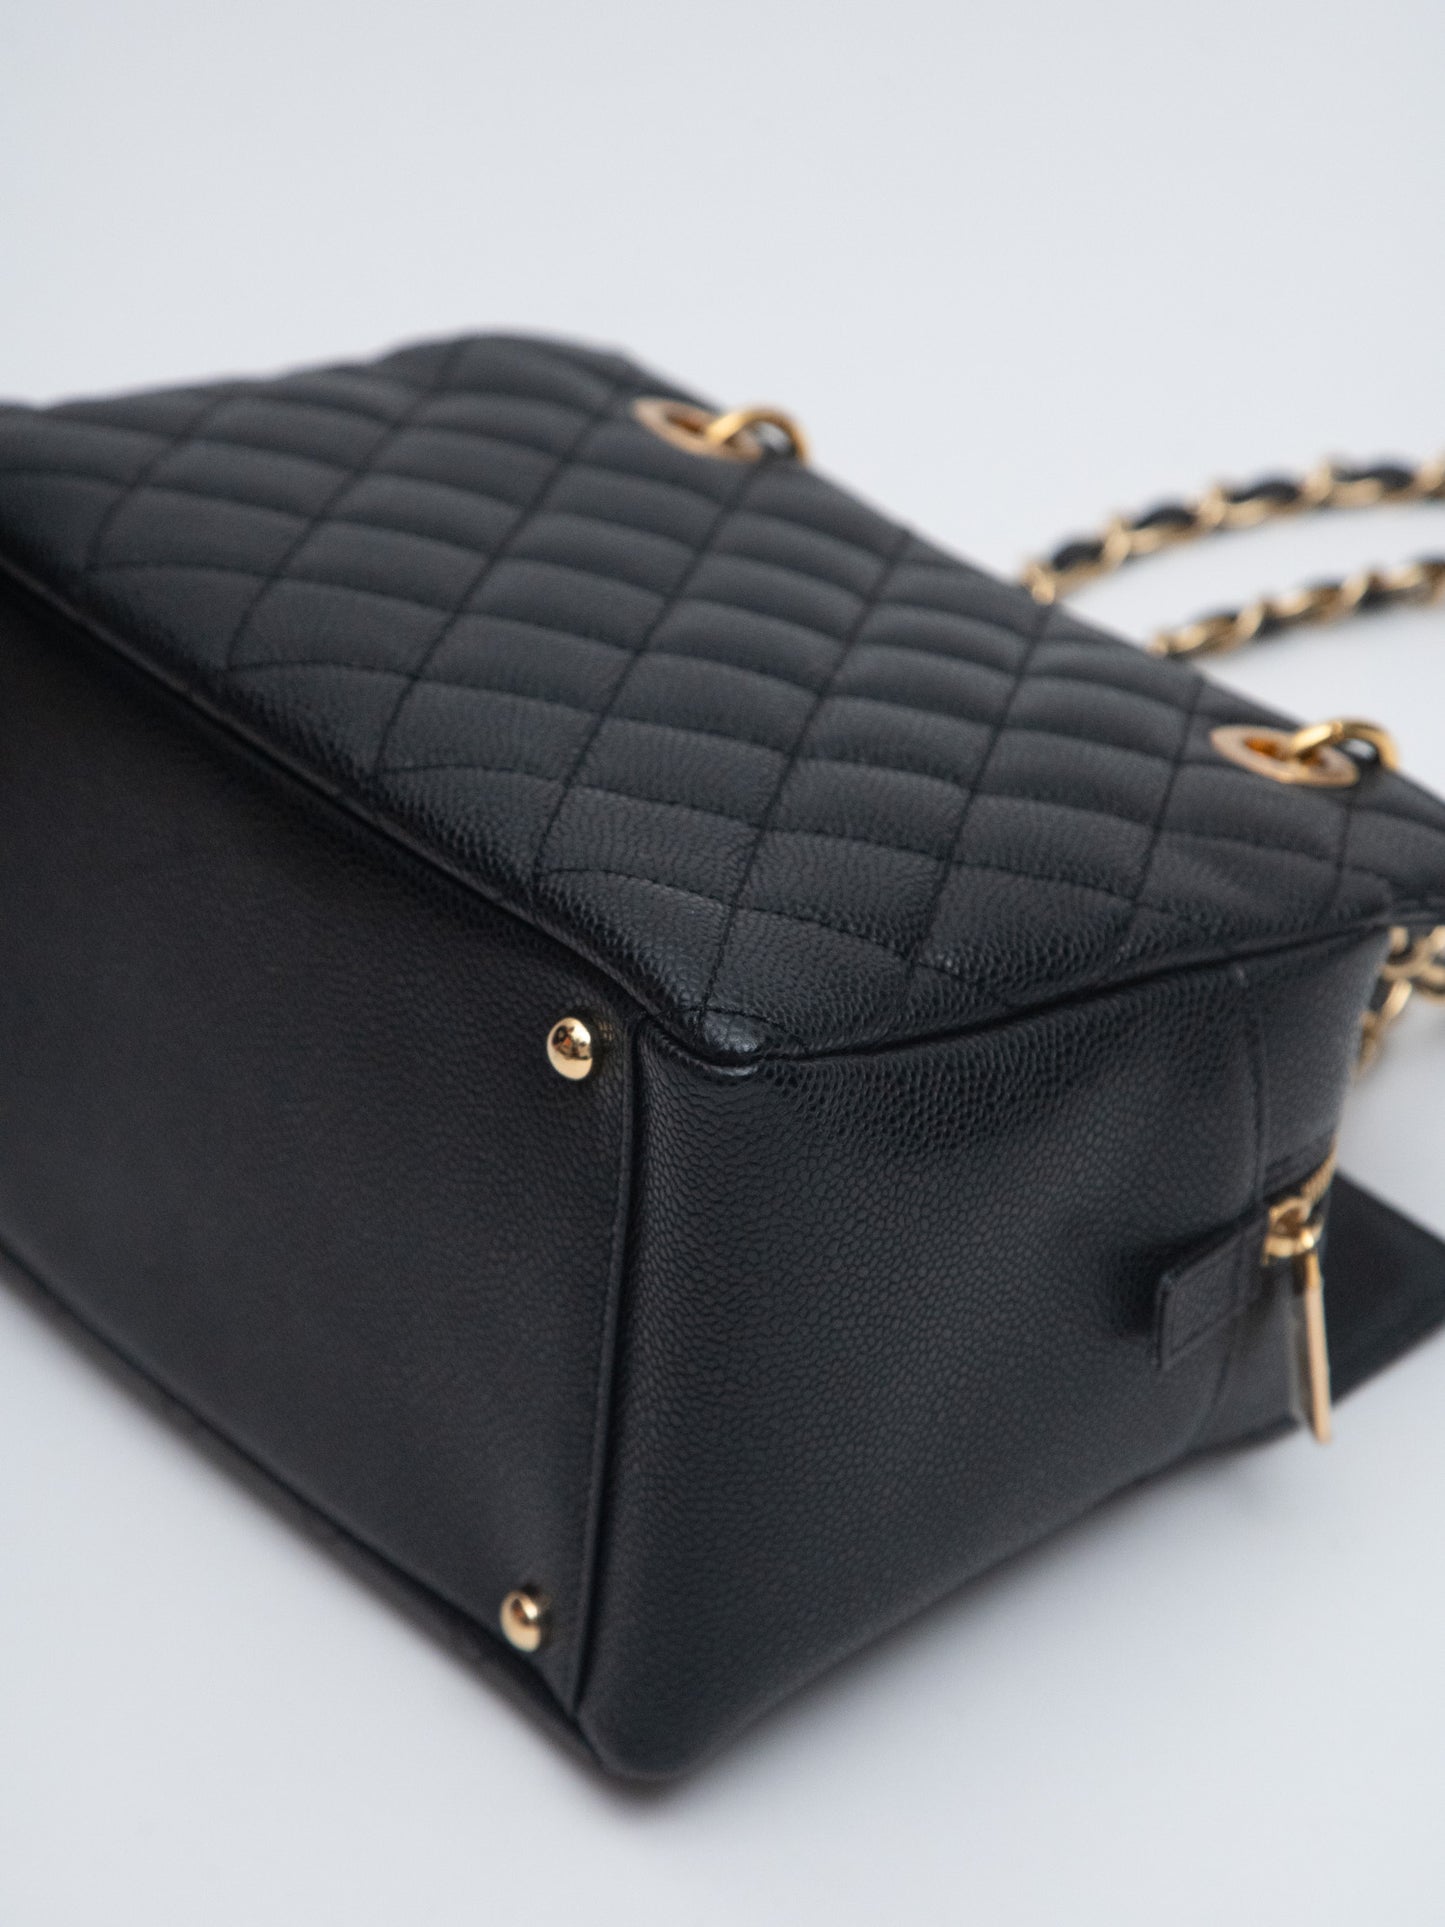 Chanel Coco Matelasse Chain Tote Bag Caviar Skin Black Gold Hardware